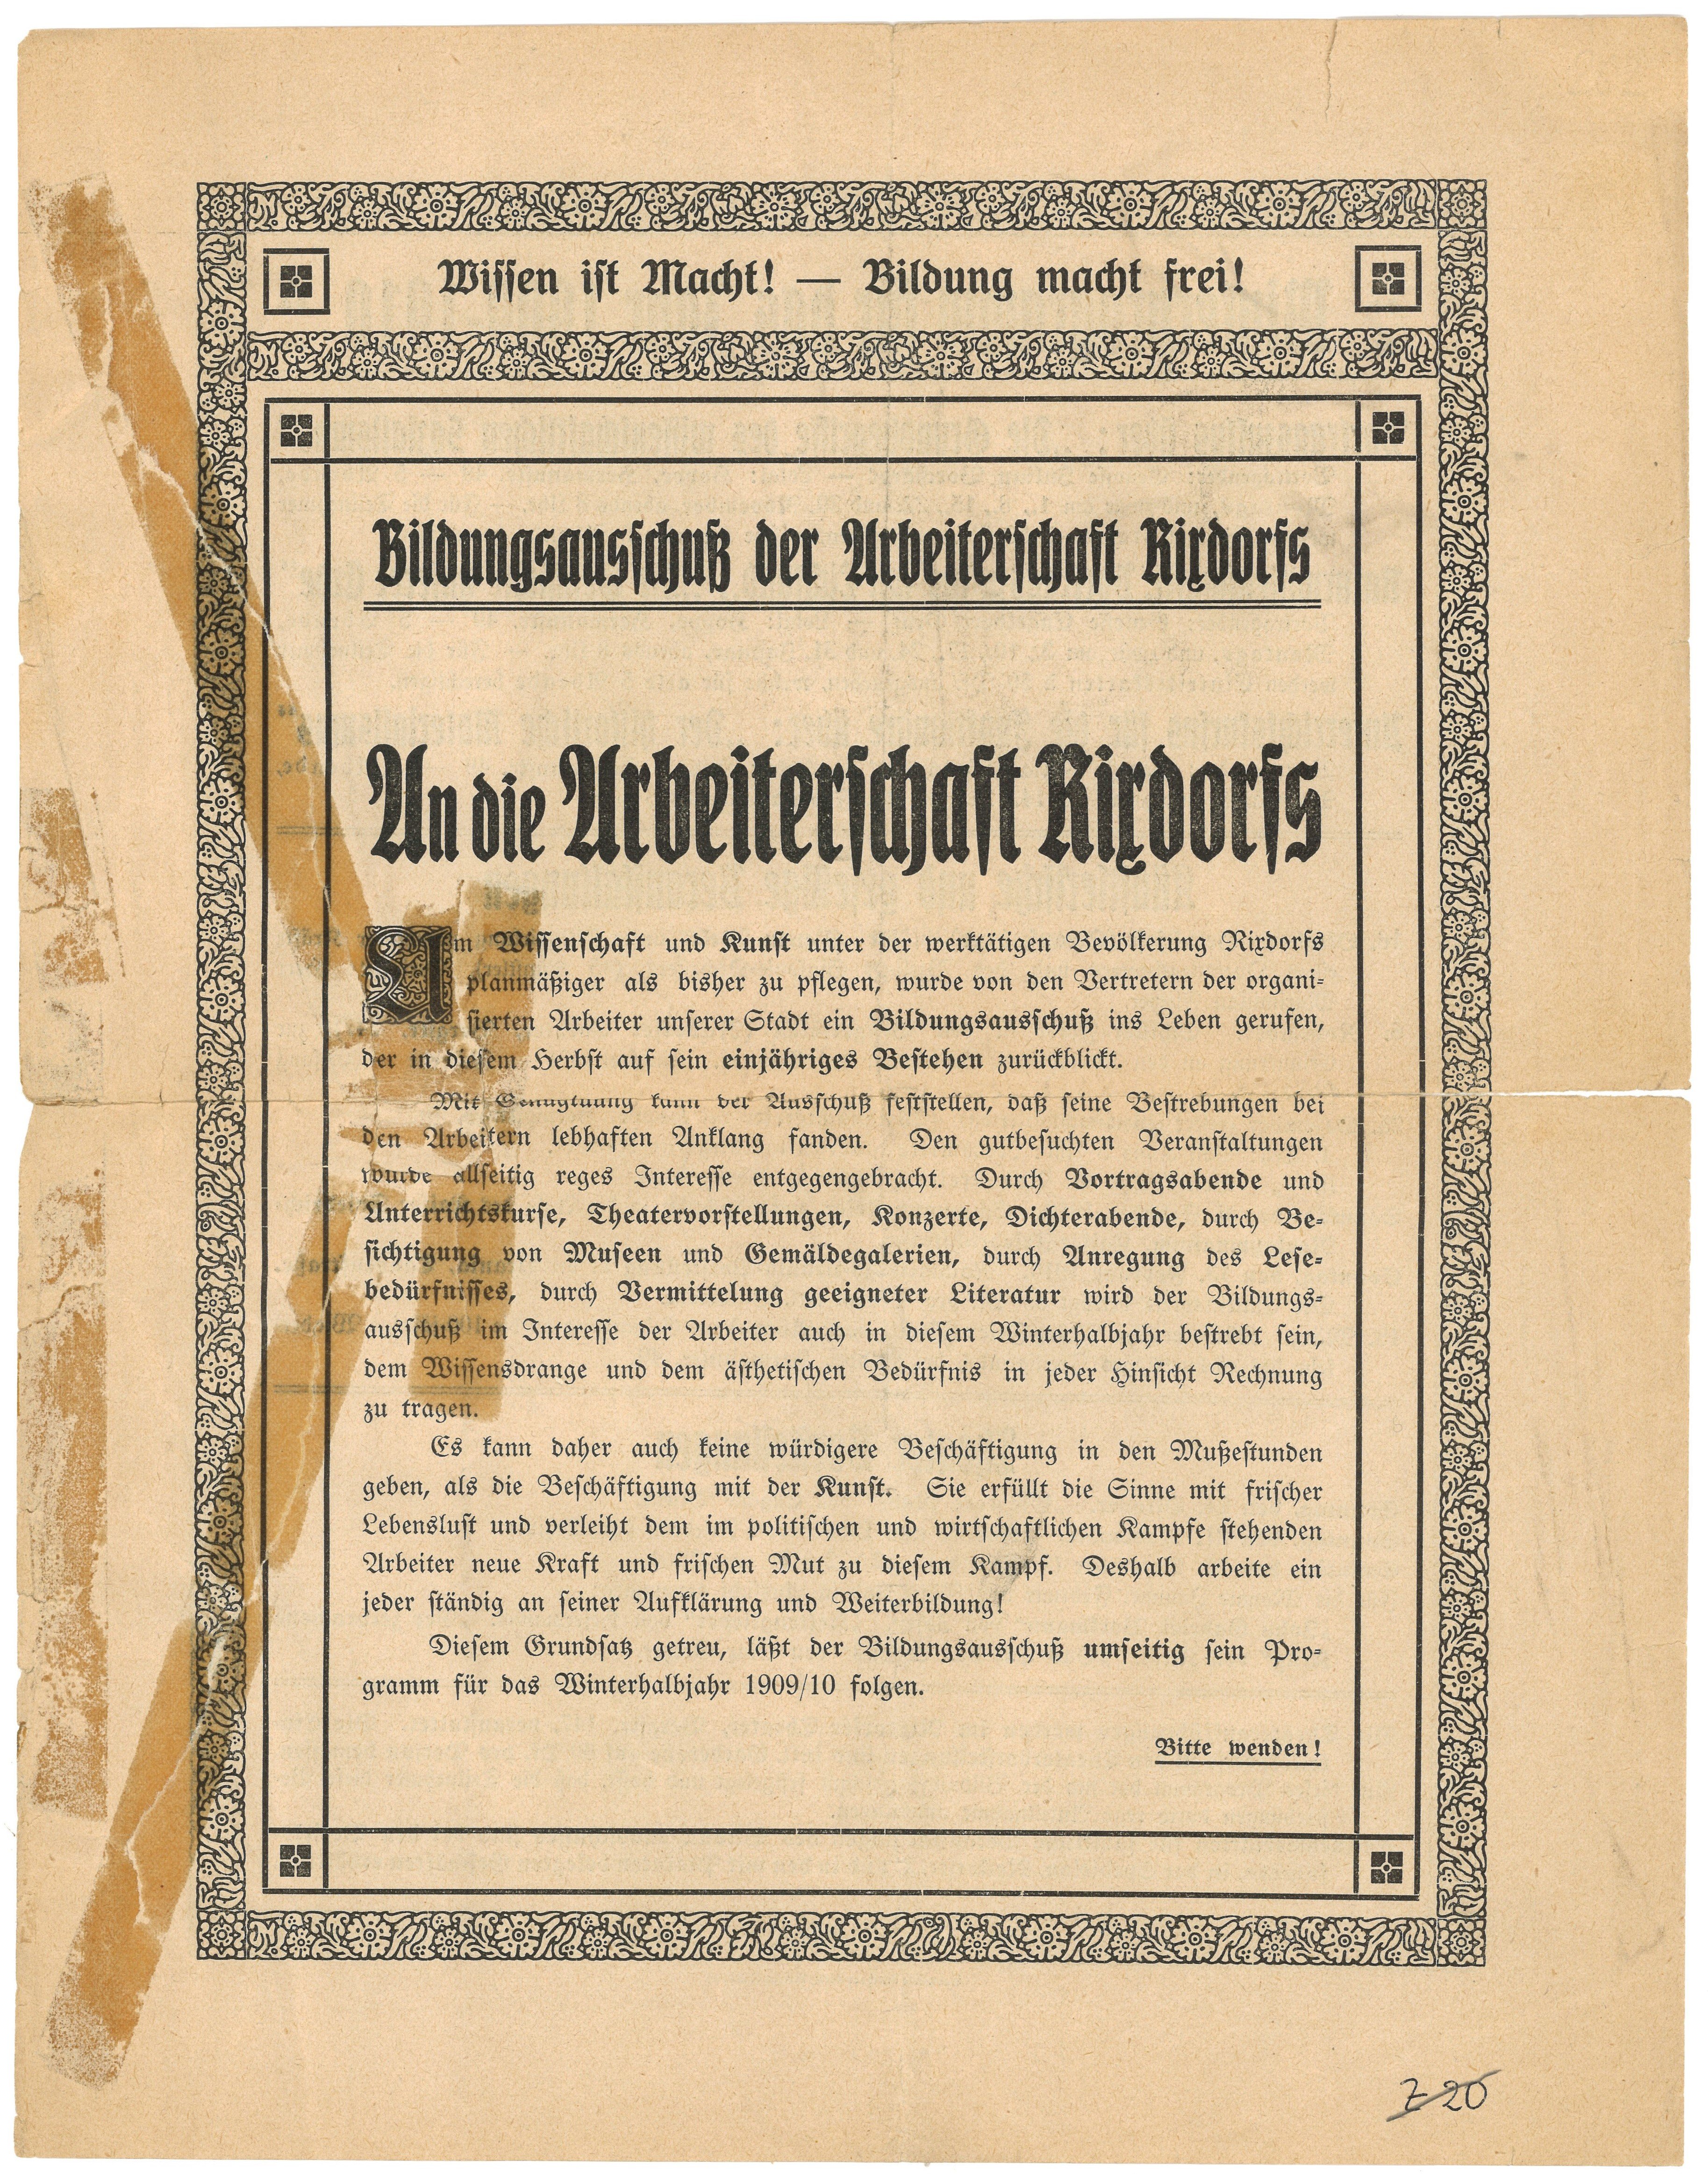 Aufruf des Bildungsausschusses der Arbeiterschaft Rixdorfs 1909 (Landesgeschichtliche Vereinigung für die Mark Brandenburg e.V., Archiv CC BY)